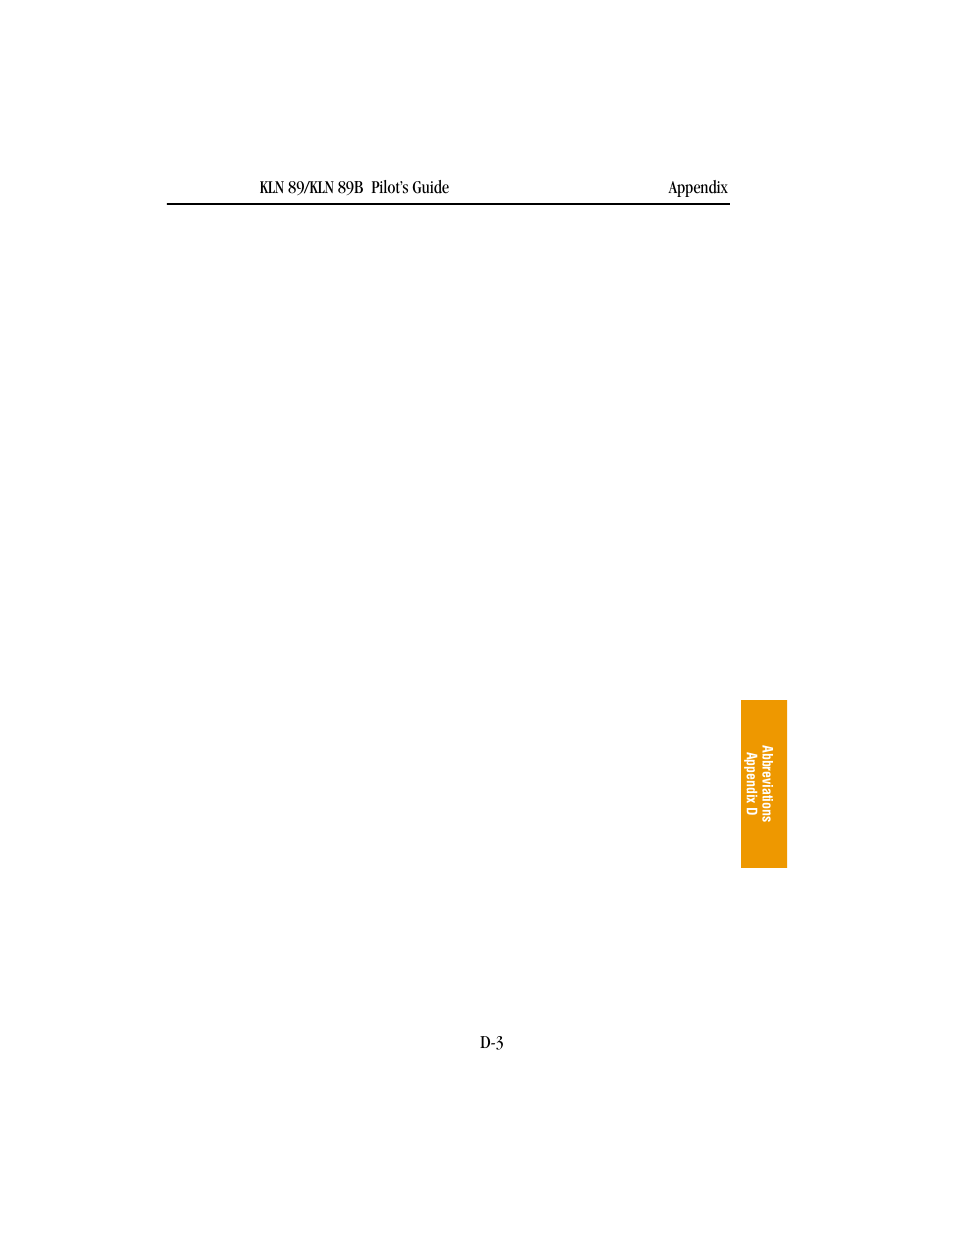 BendixKing KLN 89B - Pilots Guide User Manual | Page 210 / 246